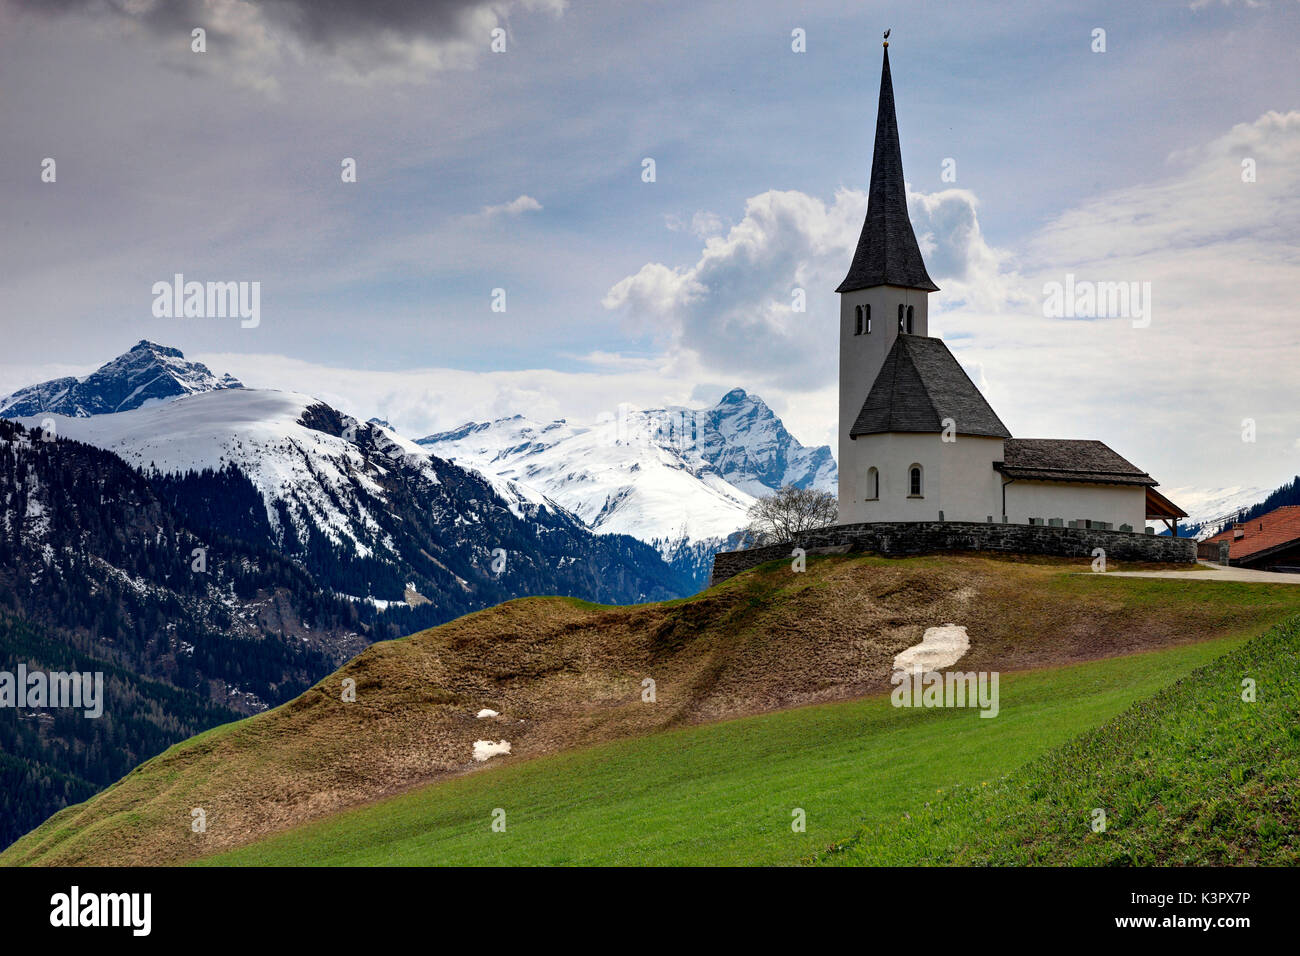 La belle église de Tenna, dans la Surselva, Grisons, Suisse Banque D'Images